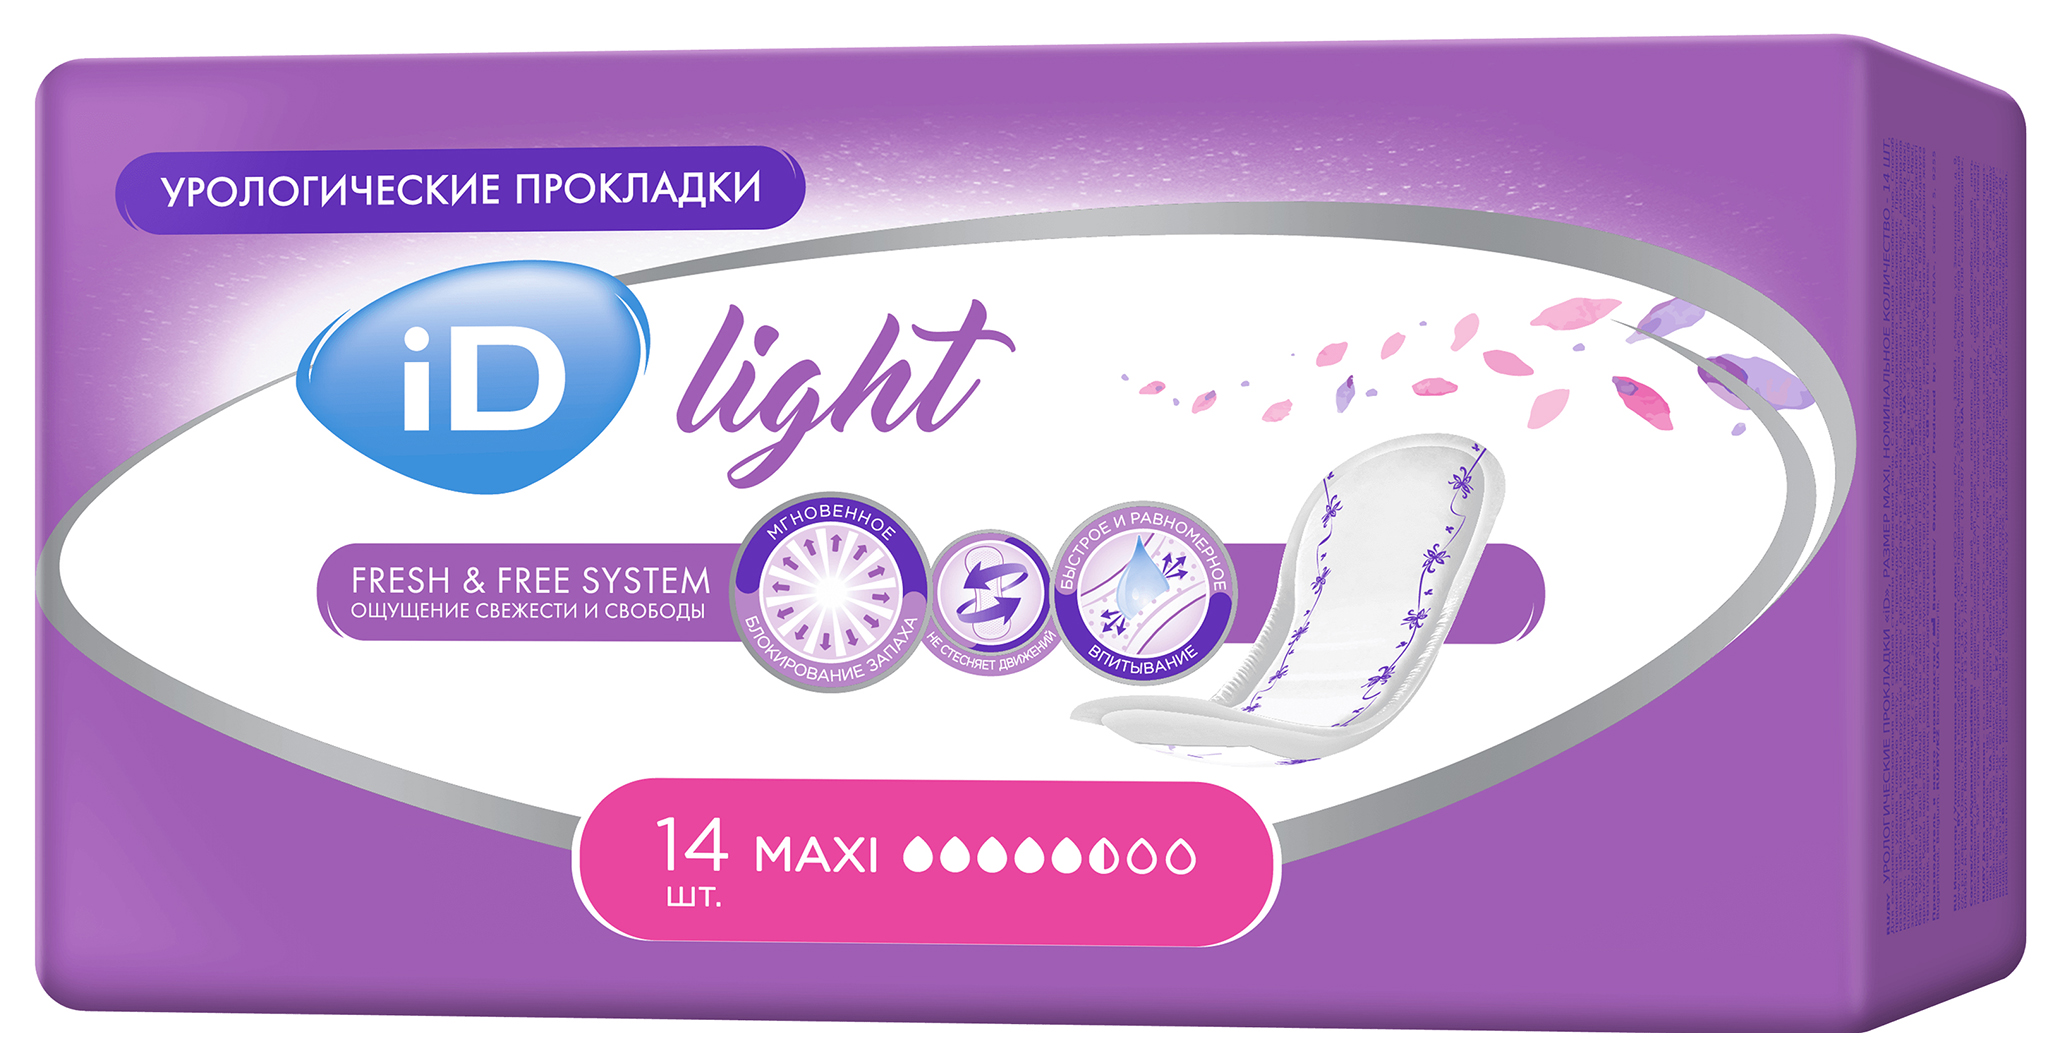 фото Урологические прокладки для женщин, 14 шт. id light maxi ontex